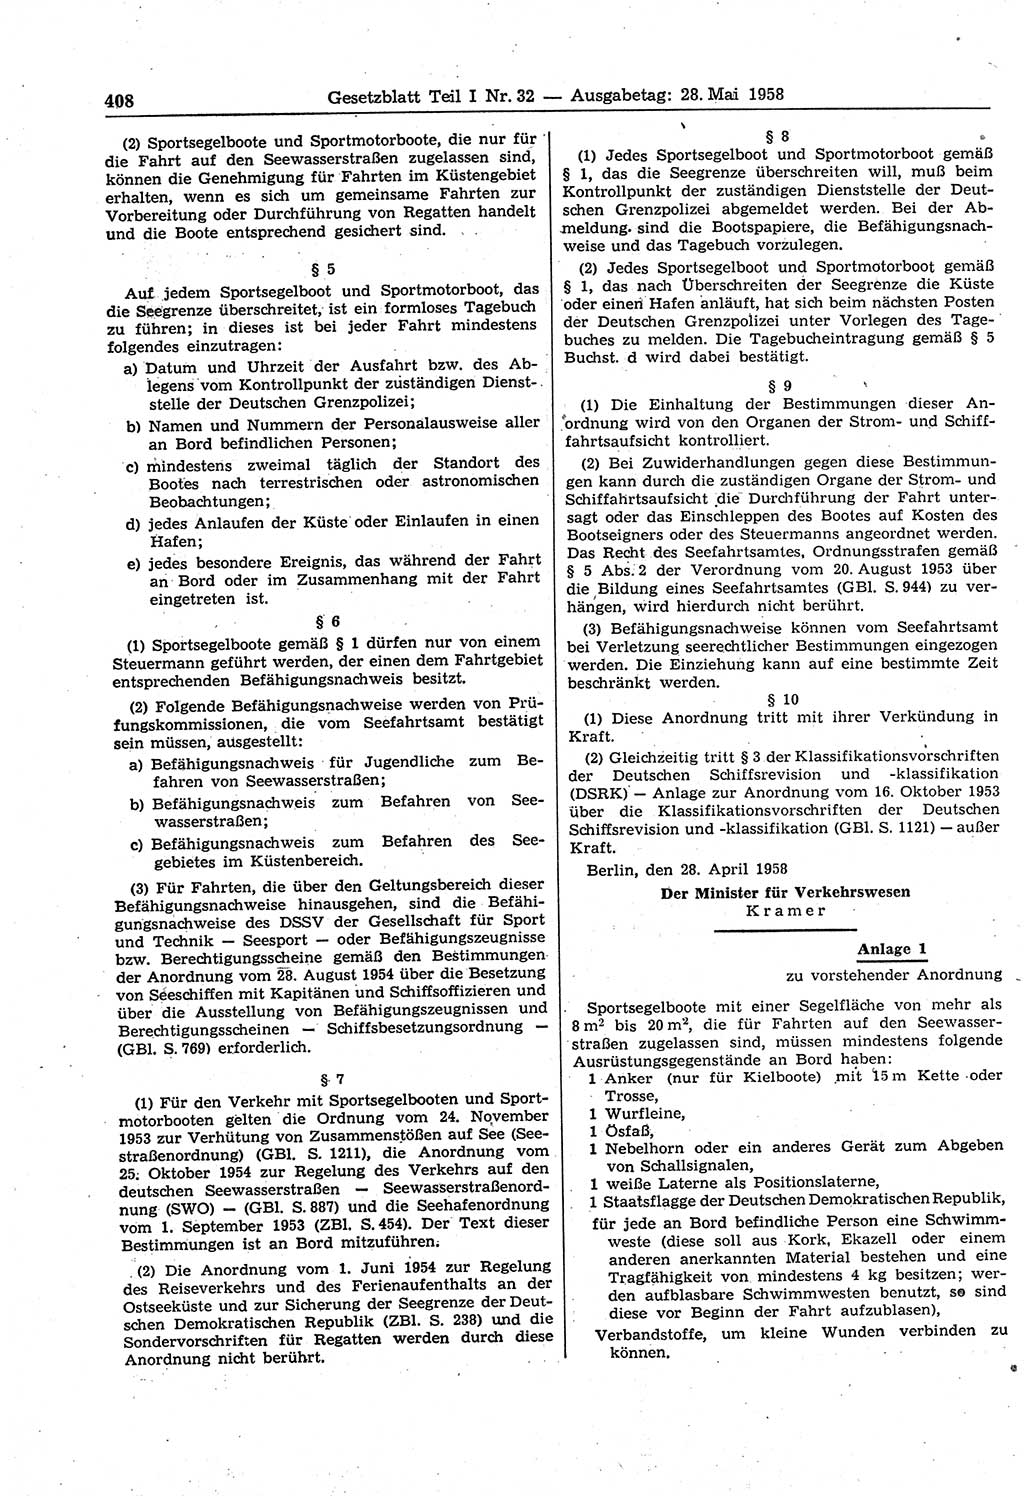 Gesetzblatt (GBl.) der Deutschen Demokratischen Republik (DDR) Teil Ⅰ 1958, Seite 408 (GBl. DDR Ⅰ 1958, S. 408)